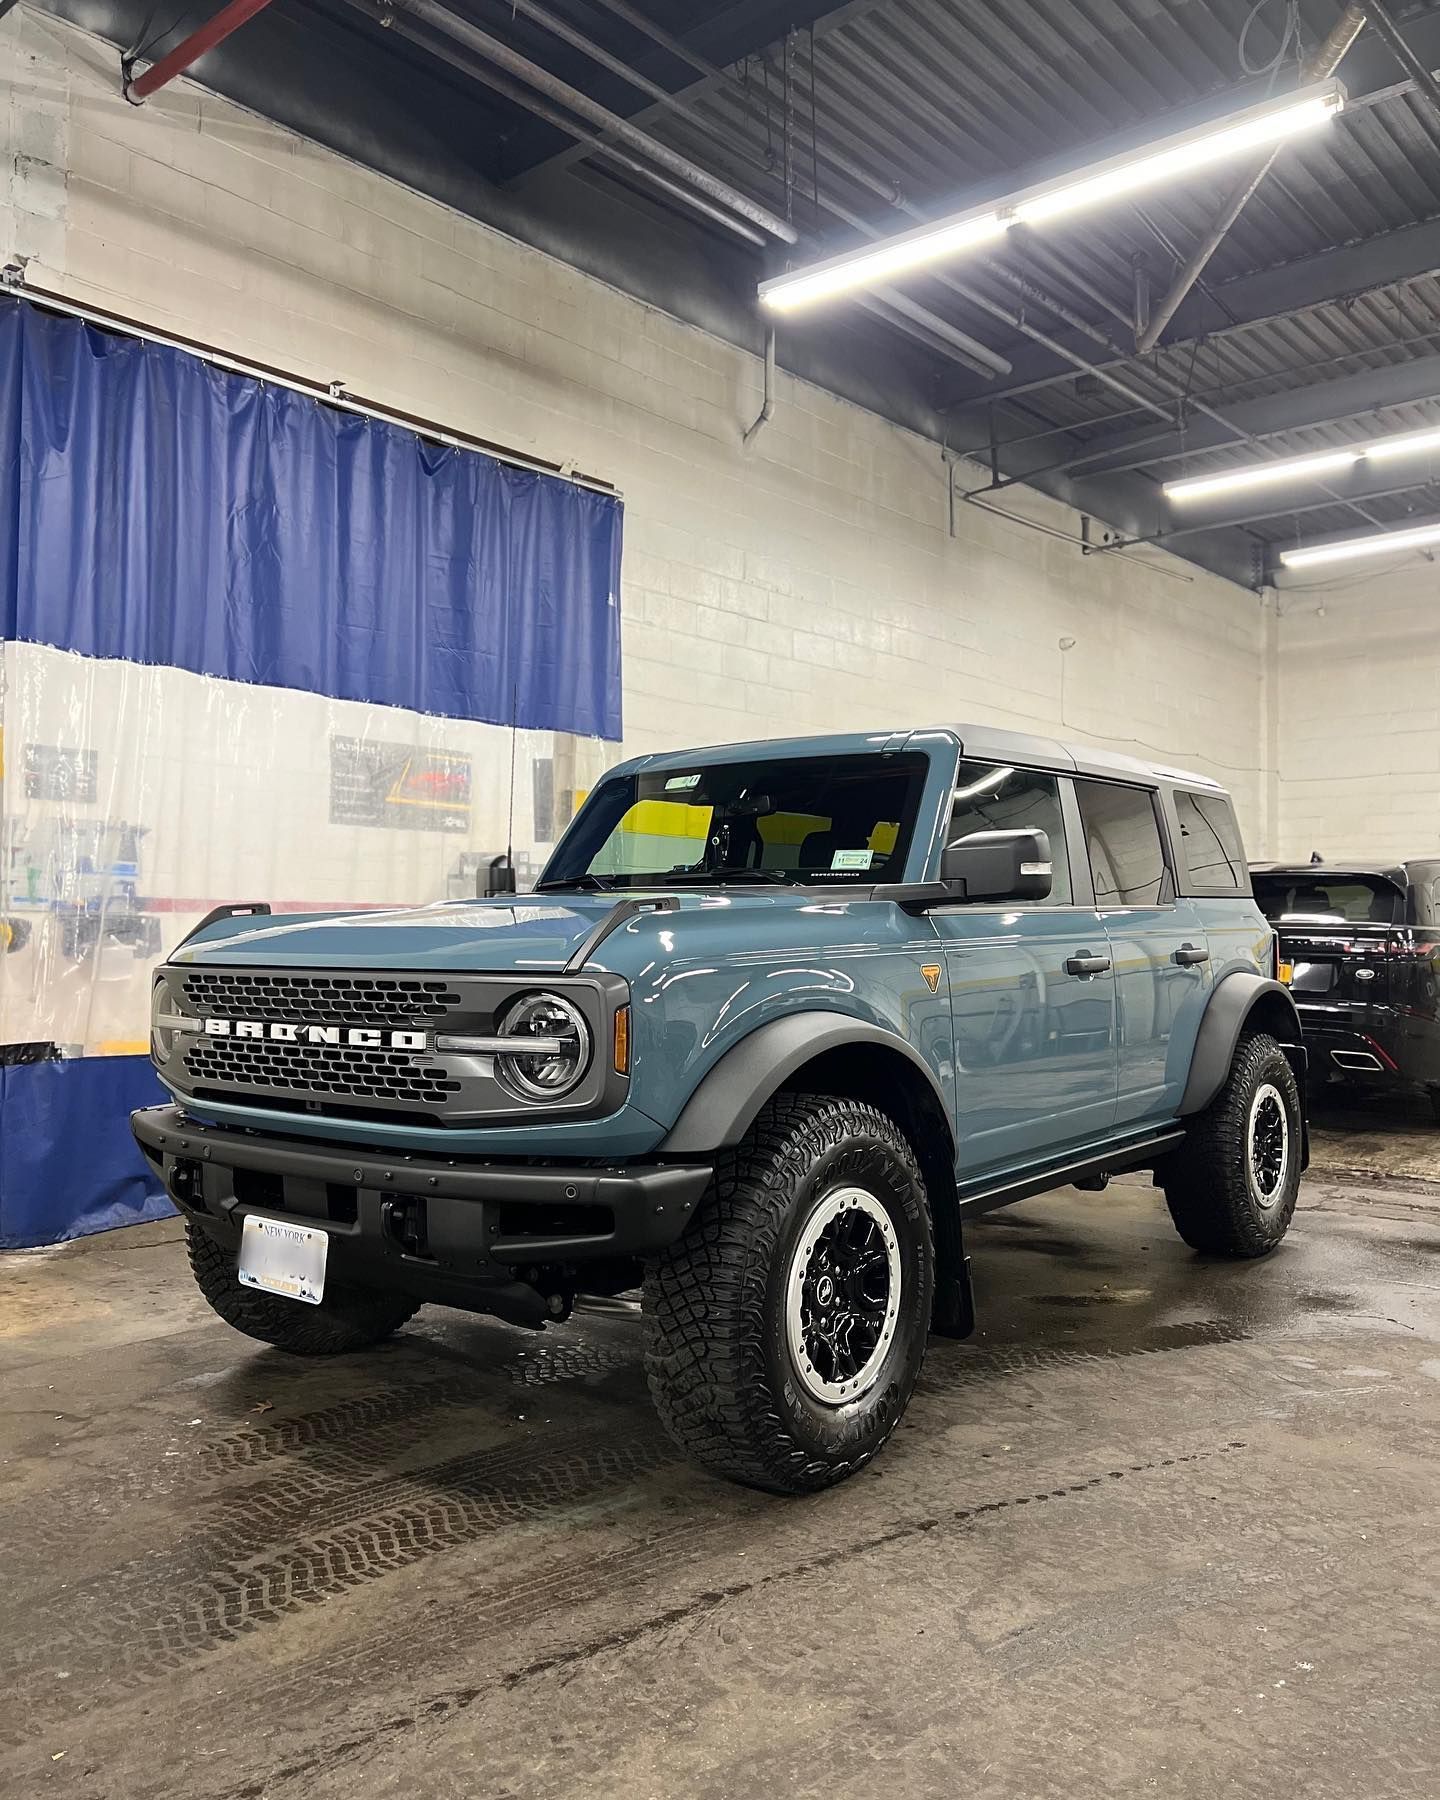 2022 Ford Bronco Badlands